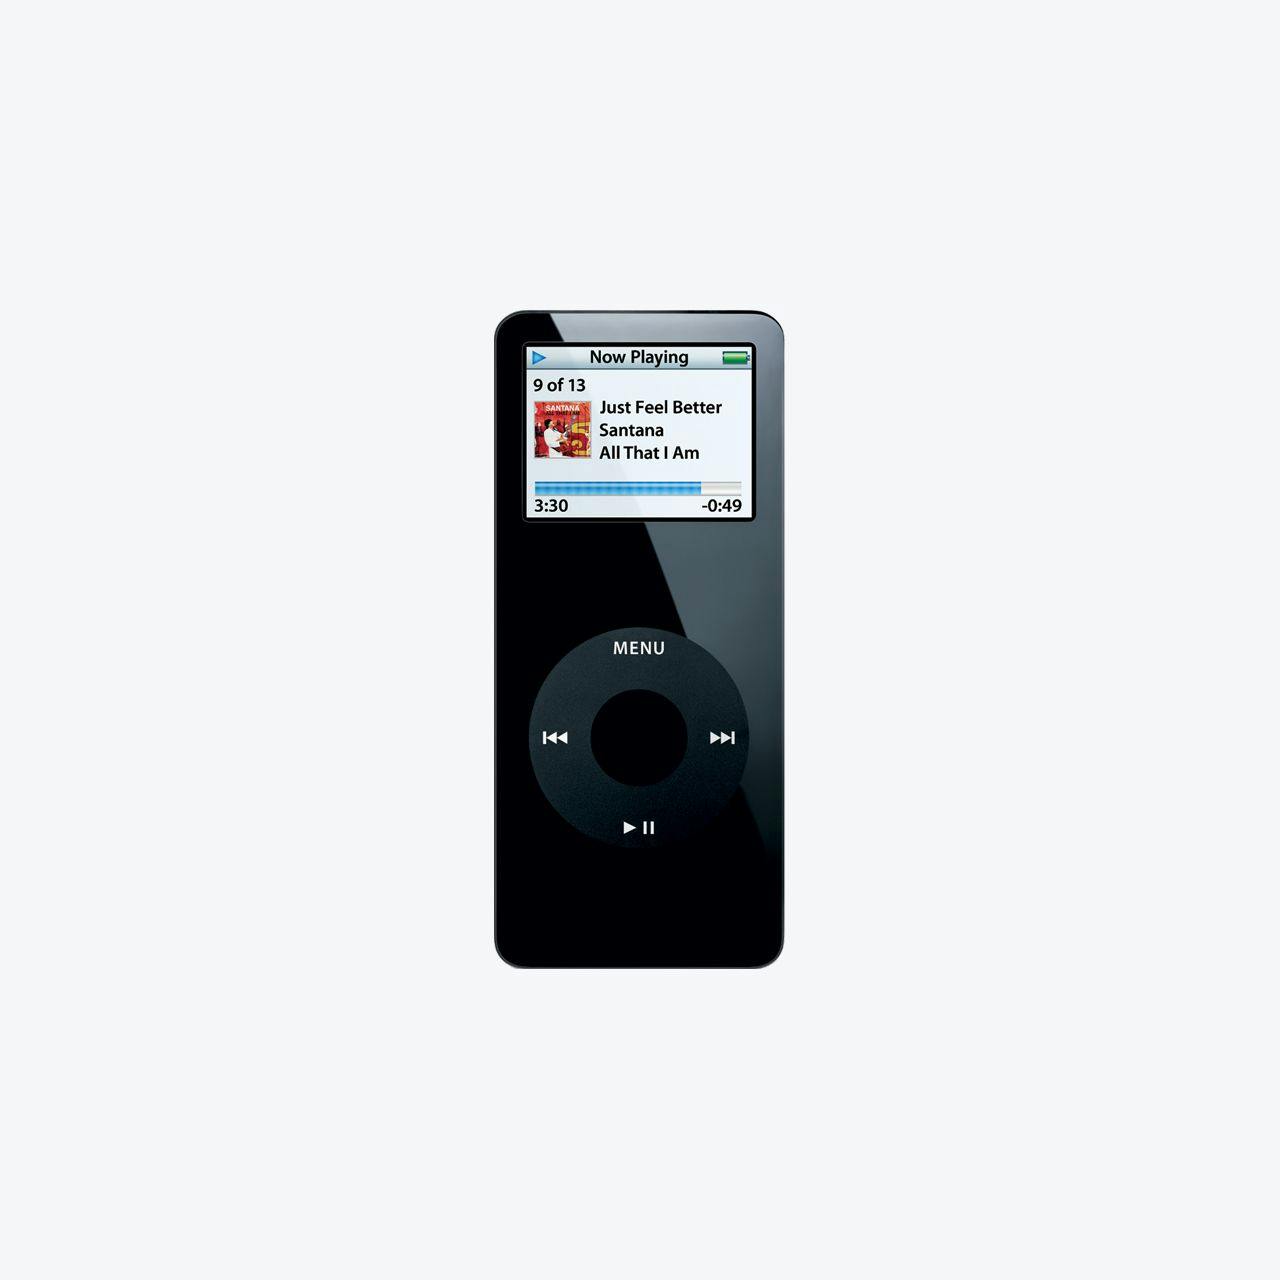 Image of a iPod Nano 2nd Generation.